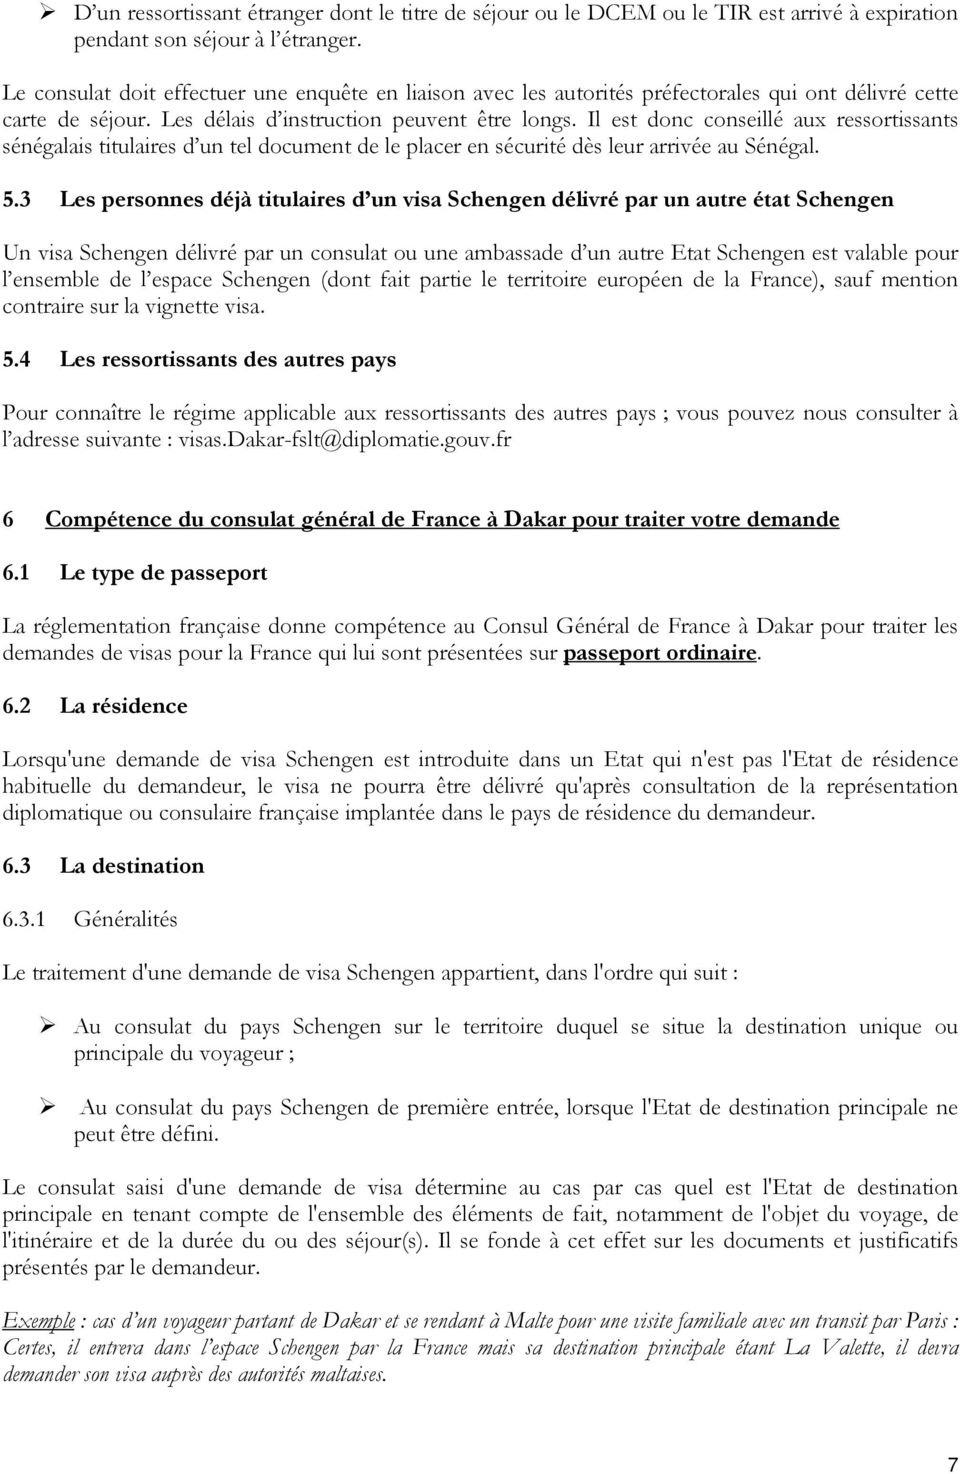 CONSULAT GENERAL DE FRANCE A DAKAR GUIDE DU DEMANDEUR DE VISA - PDF  Téléchargement Gratuit